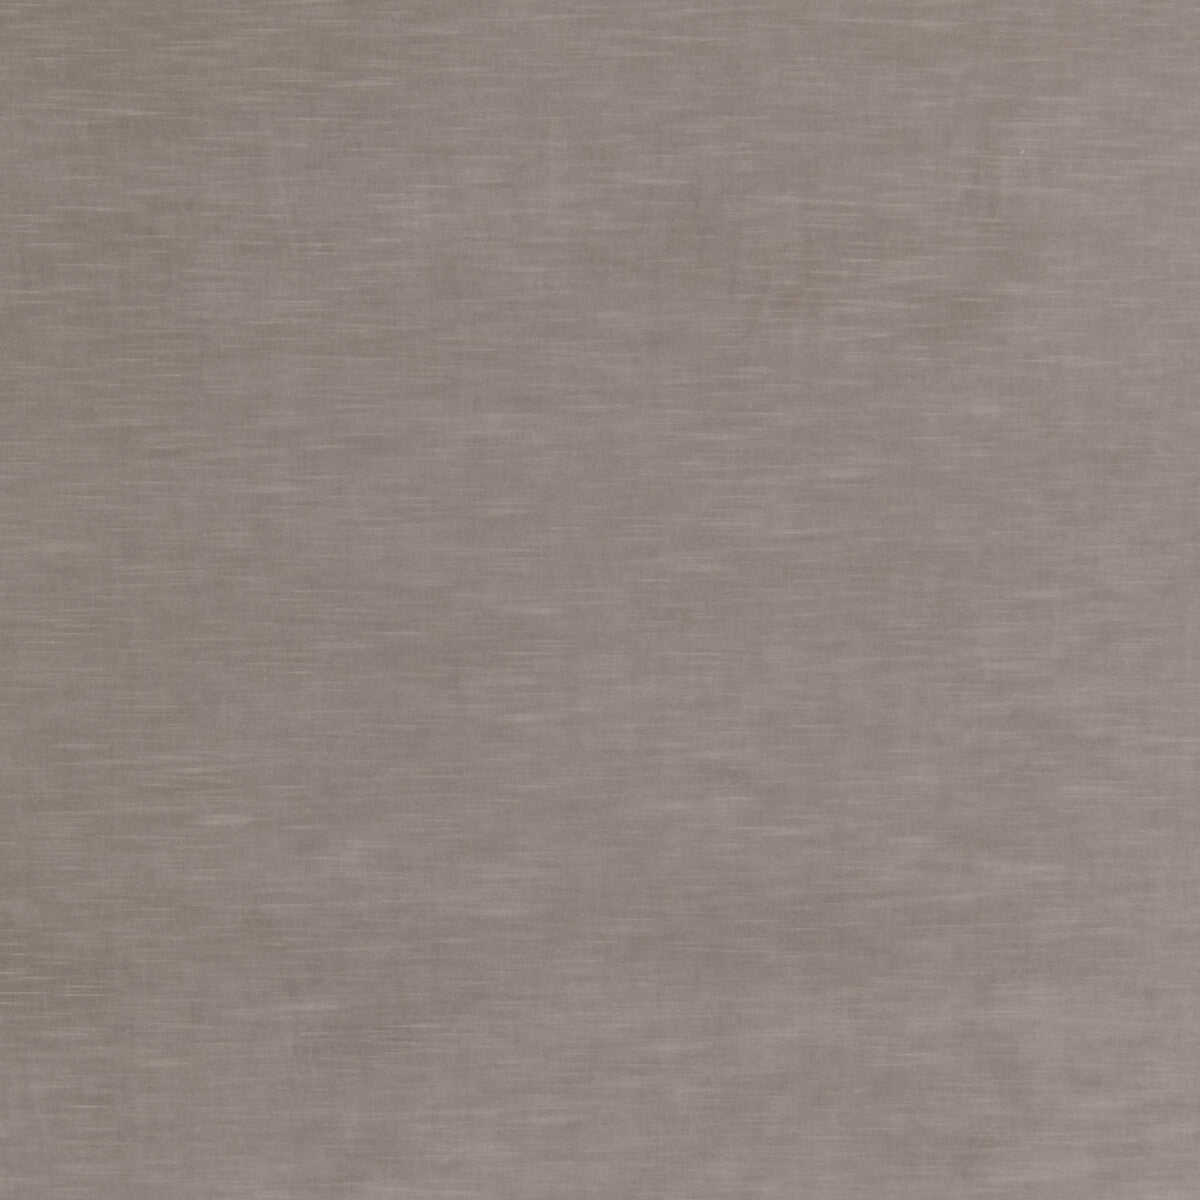 Quintessential Velvet fabric in ash color - pattern ED85359.904.0 - by Threads in the Quintessential Velvet collection